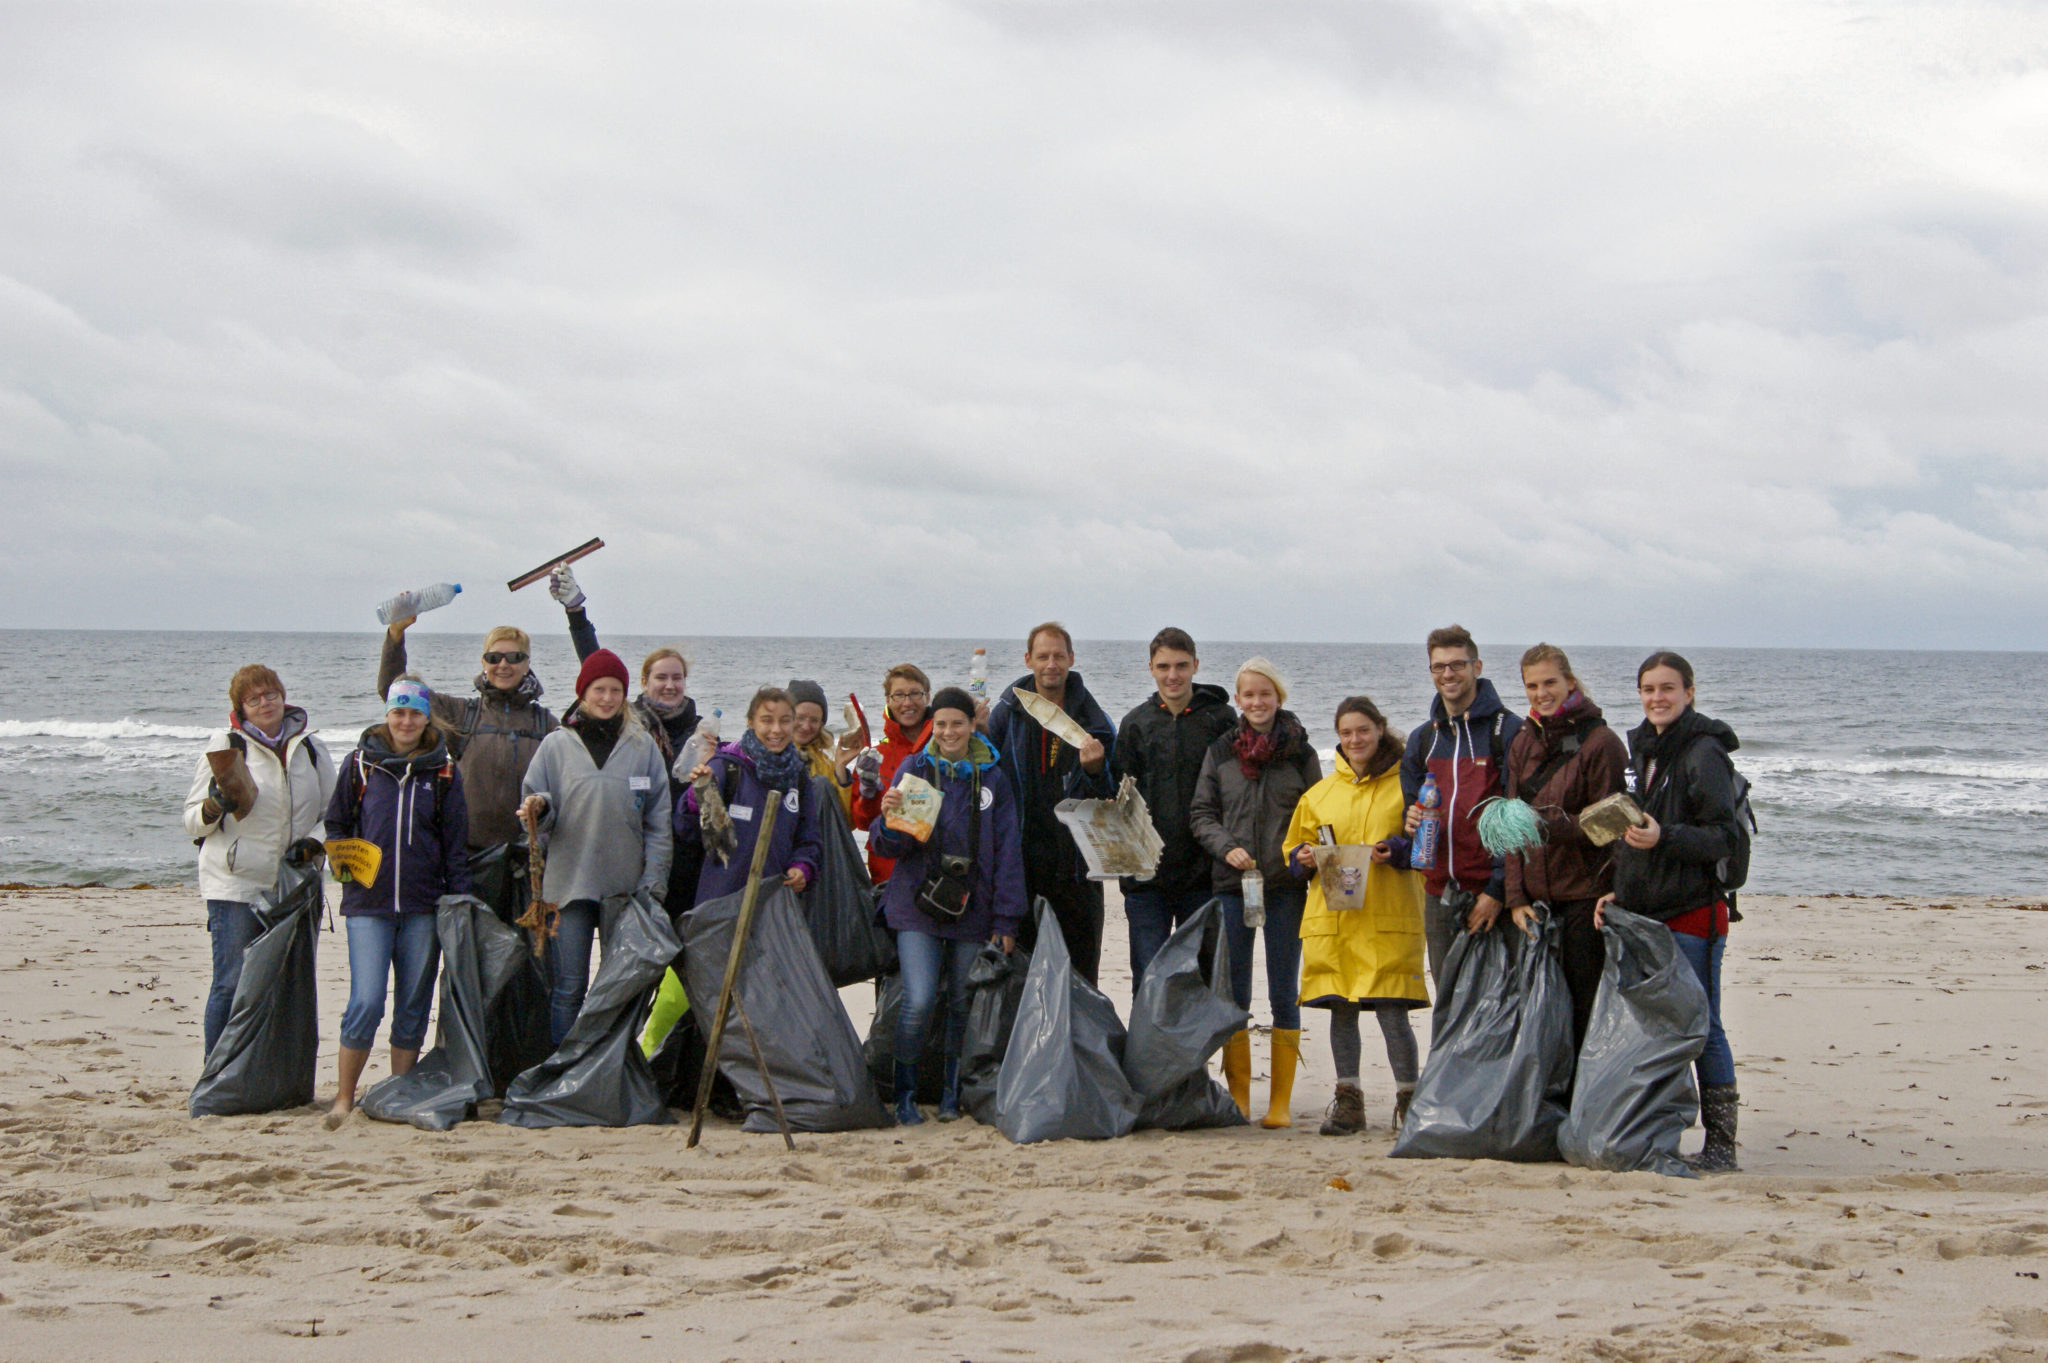 Gruppenfoto mit mehreren Menschen am Strand, die gefüllte Müllsäcke in der Hand halten